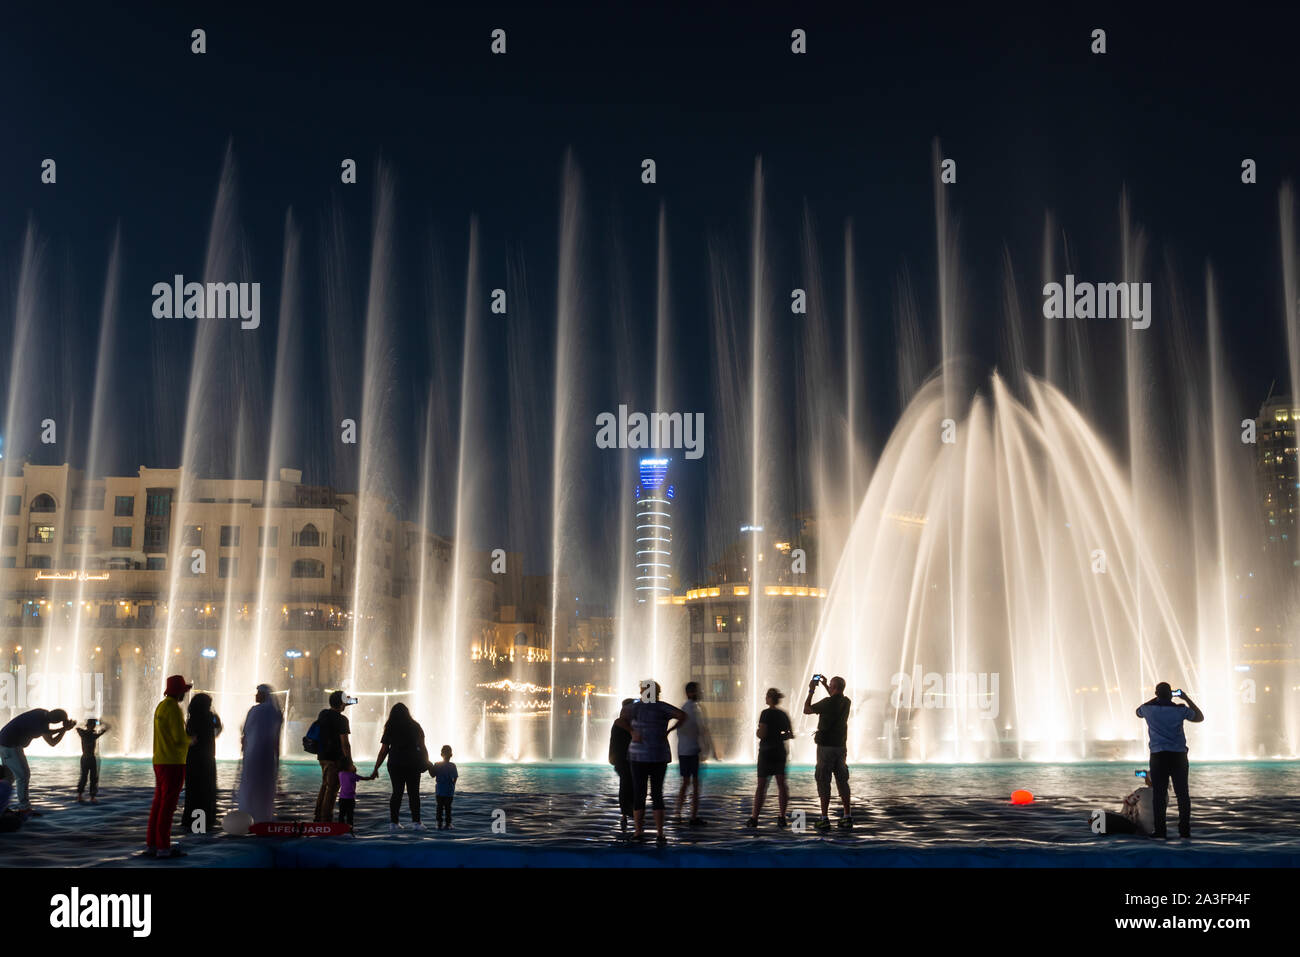 Siluetas de gente disfrutando de la fuente en la noche Show en Dubai, Emiratos Árabes Unidos Foto de stock